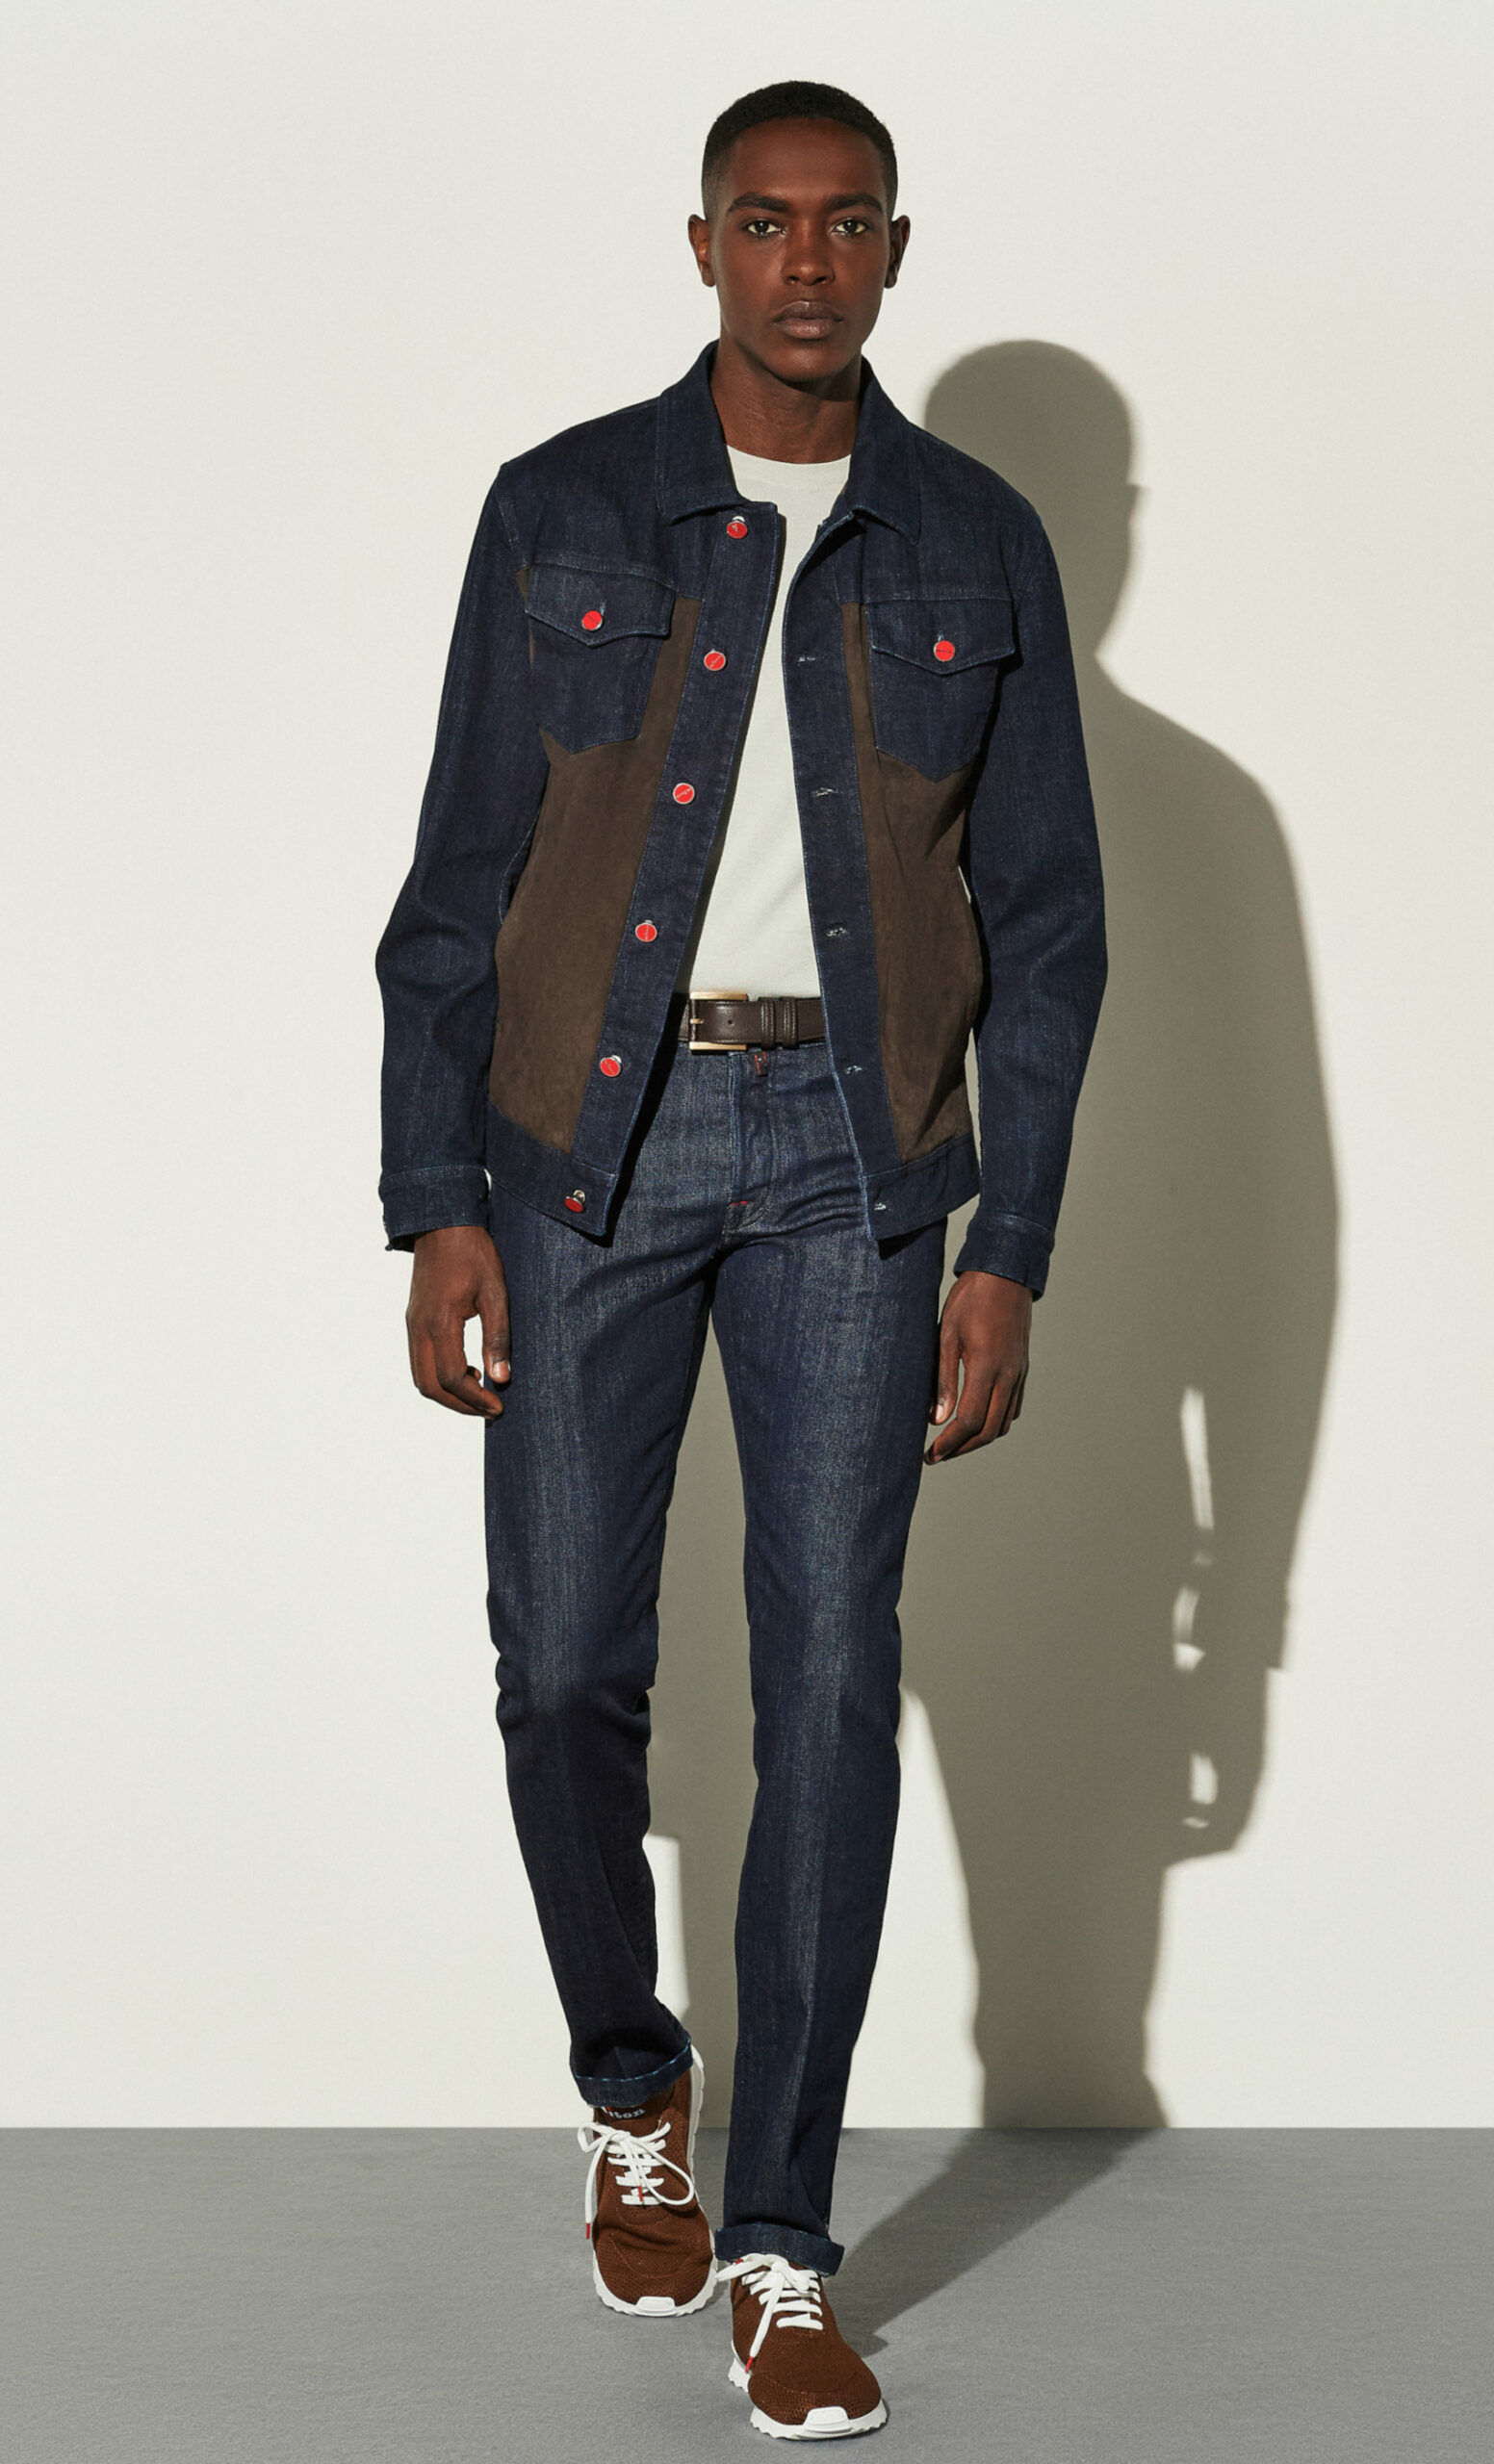 Model in Jeansjacke mit Ledereinsätzen und roten Knöpfen, Studioaufnahme